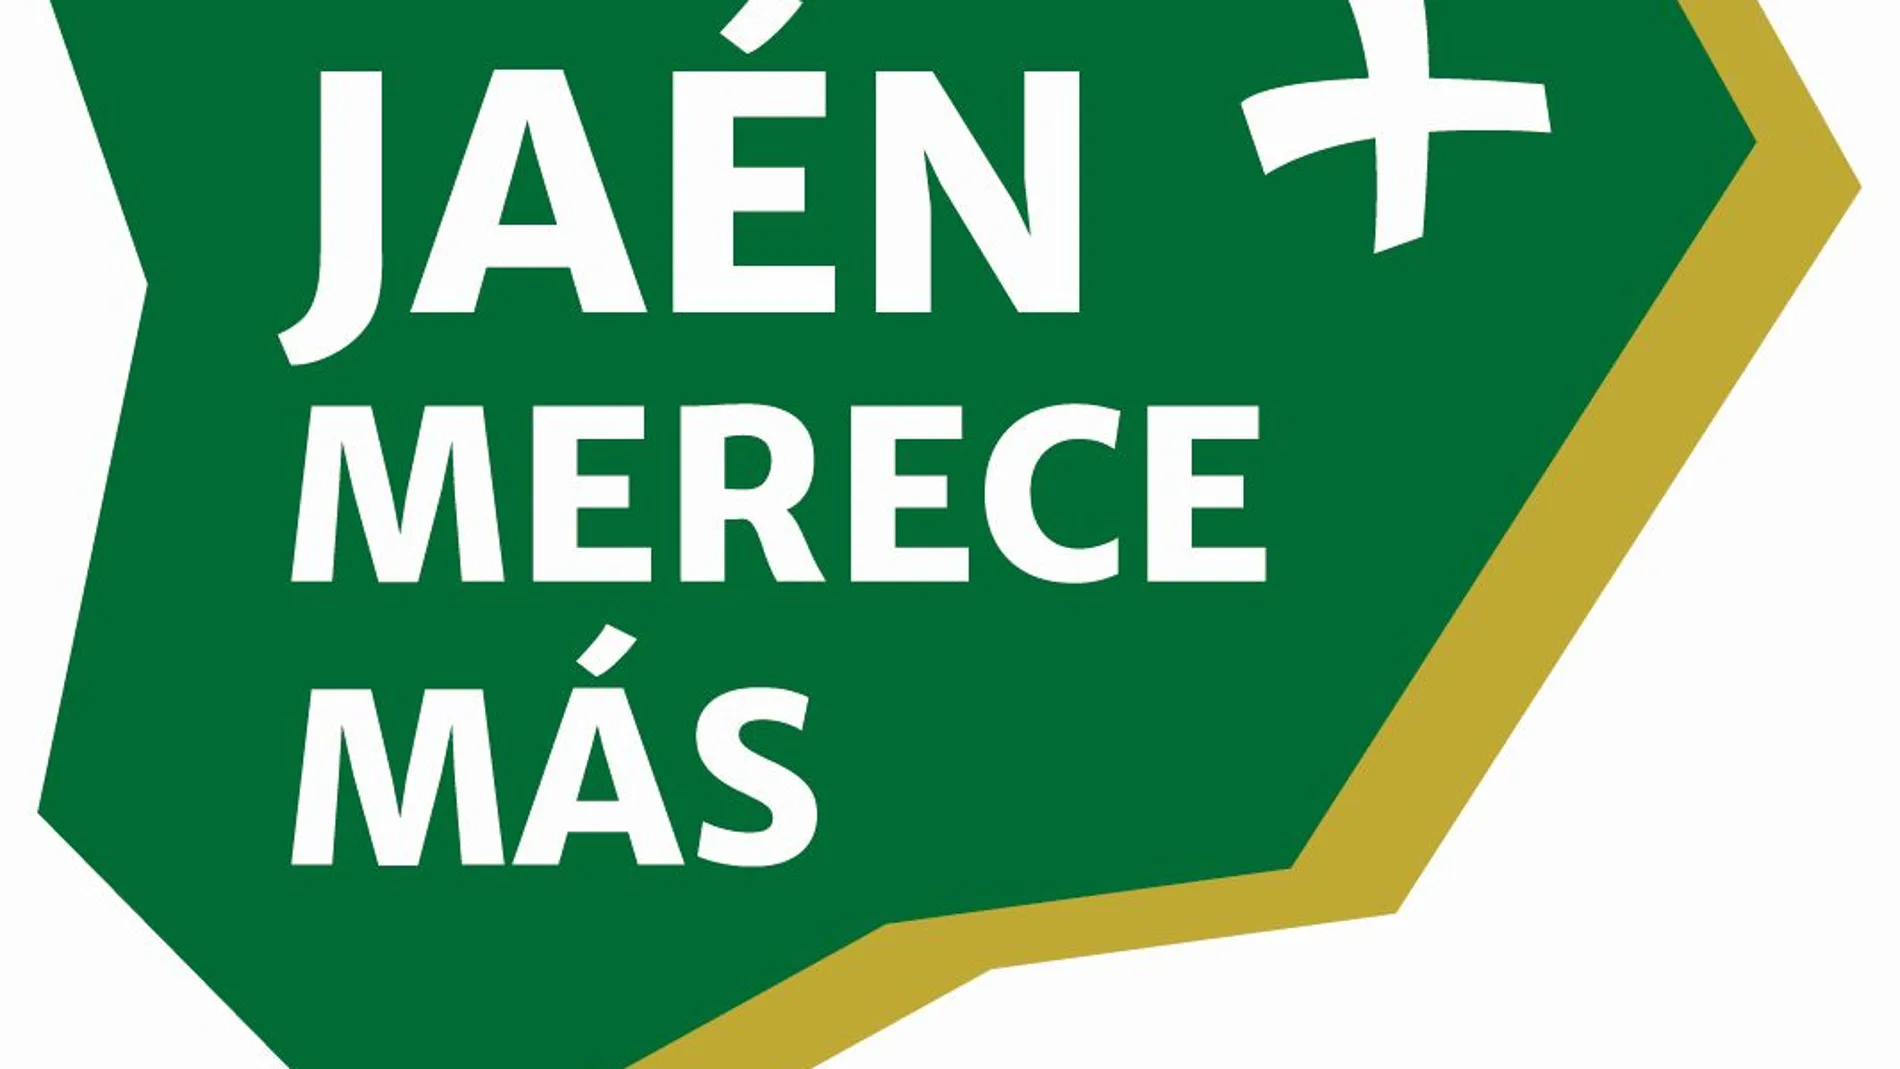 Logotipo del partido "Jaén merece más"